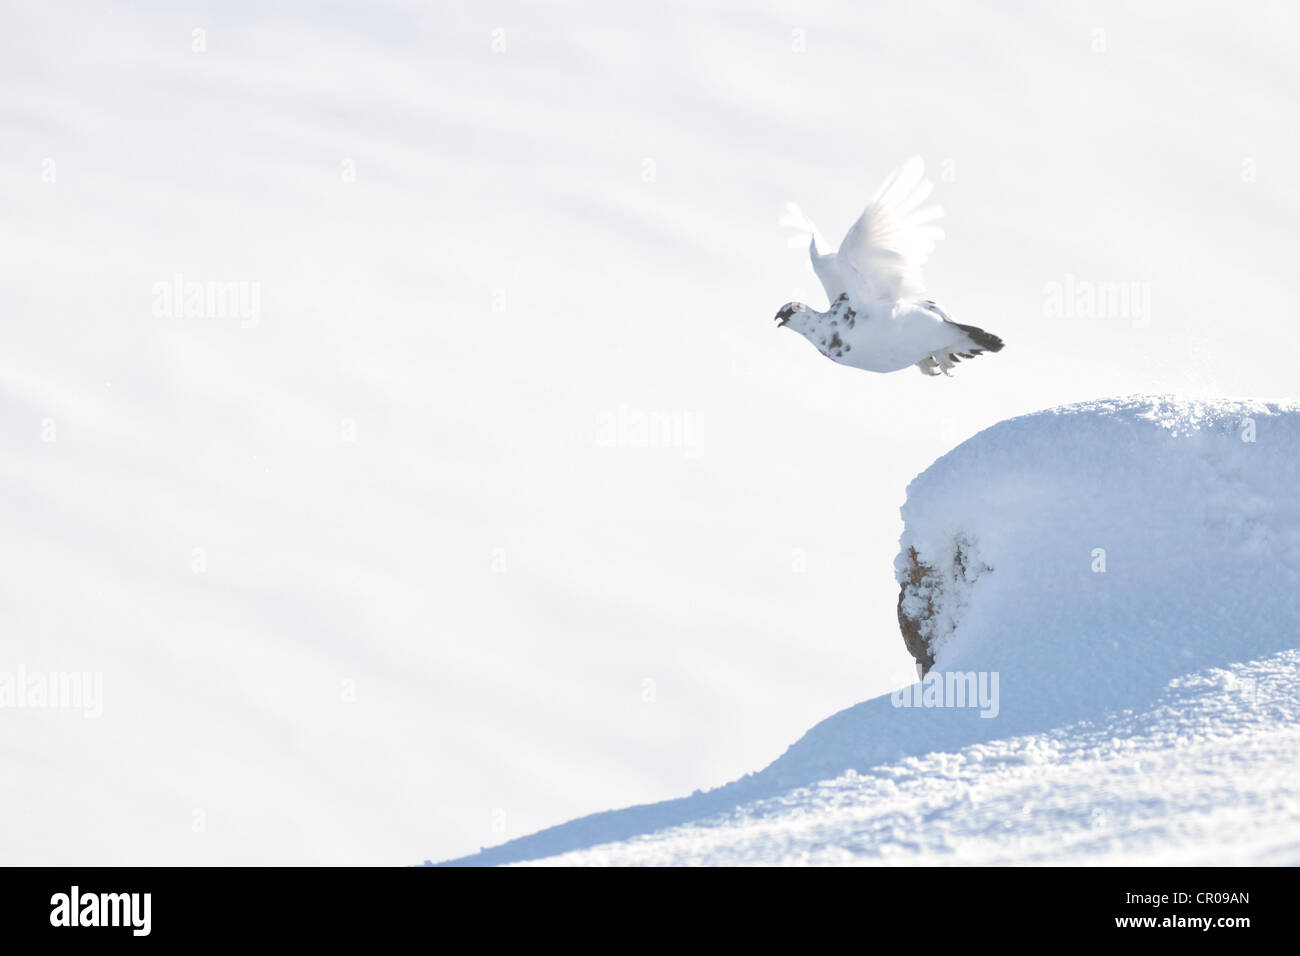 Le lagopède alpin (Lagopus mutus) mâles adultes en vol, dans la montagne enneigée paysage. Le Parc National de Cairngorms, en Écosse. Février. Banque D'Images